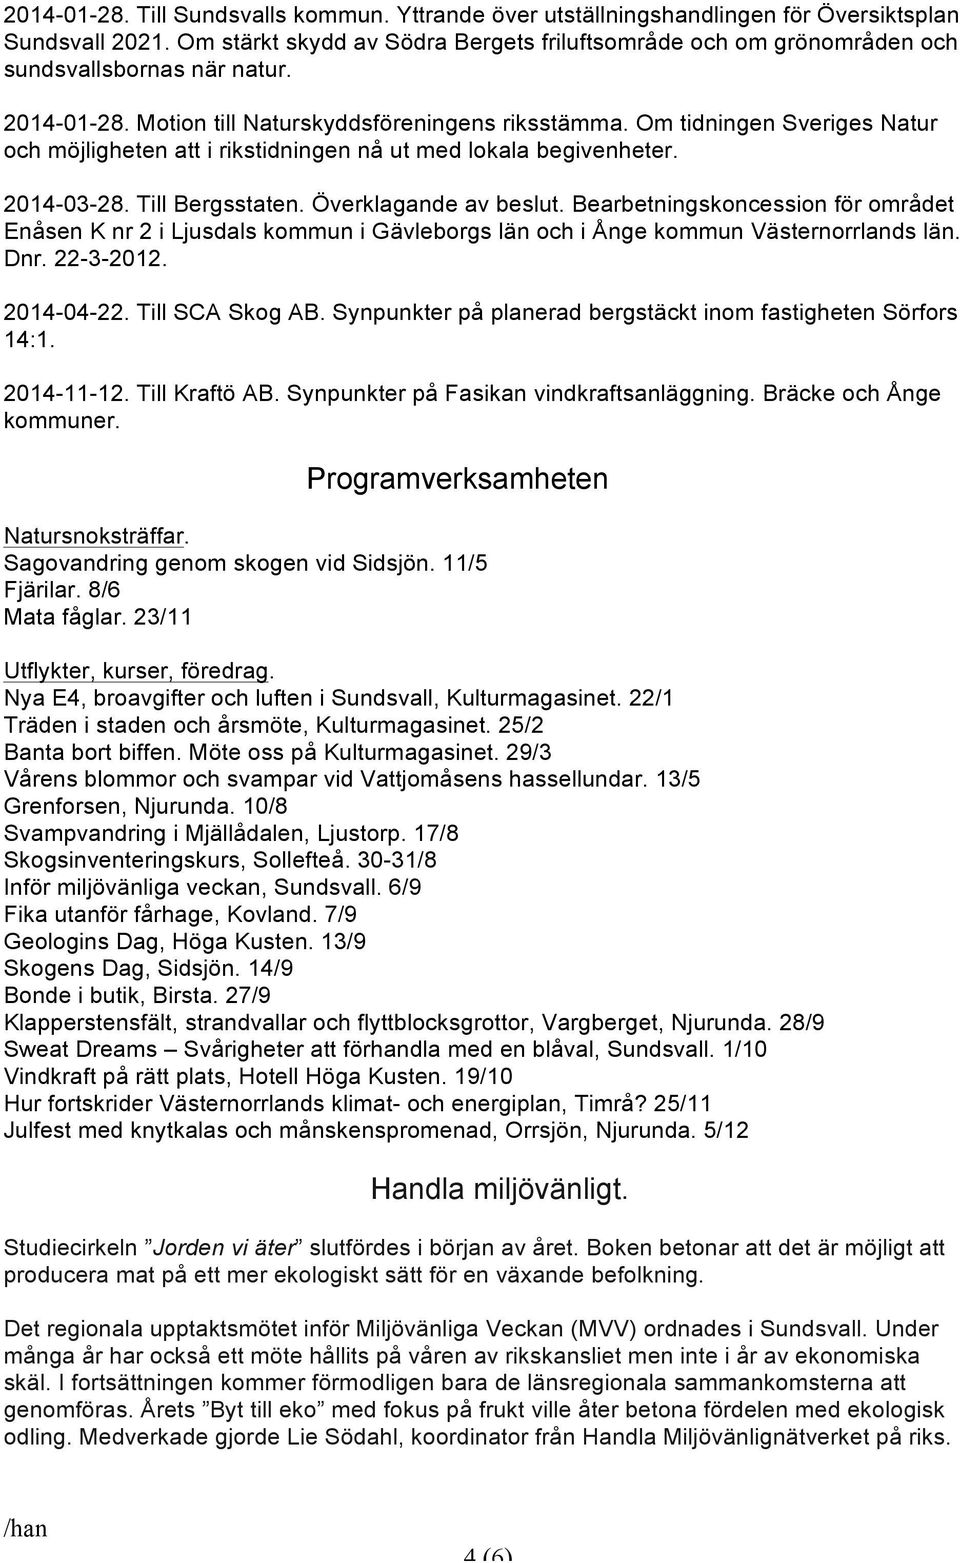 Om tidningen Sveriges Natur och möjligheten att i rikstidningen nå ut med lokala begivenheter. 2014-03-28. Till Bergsstaten. Överklagande av beslut.